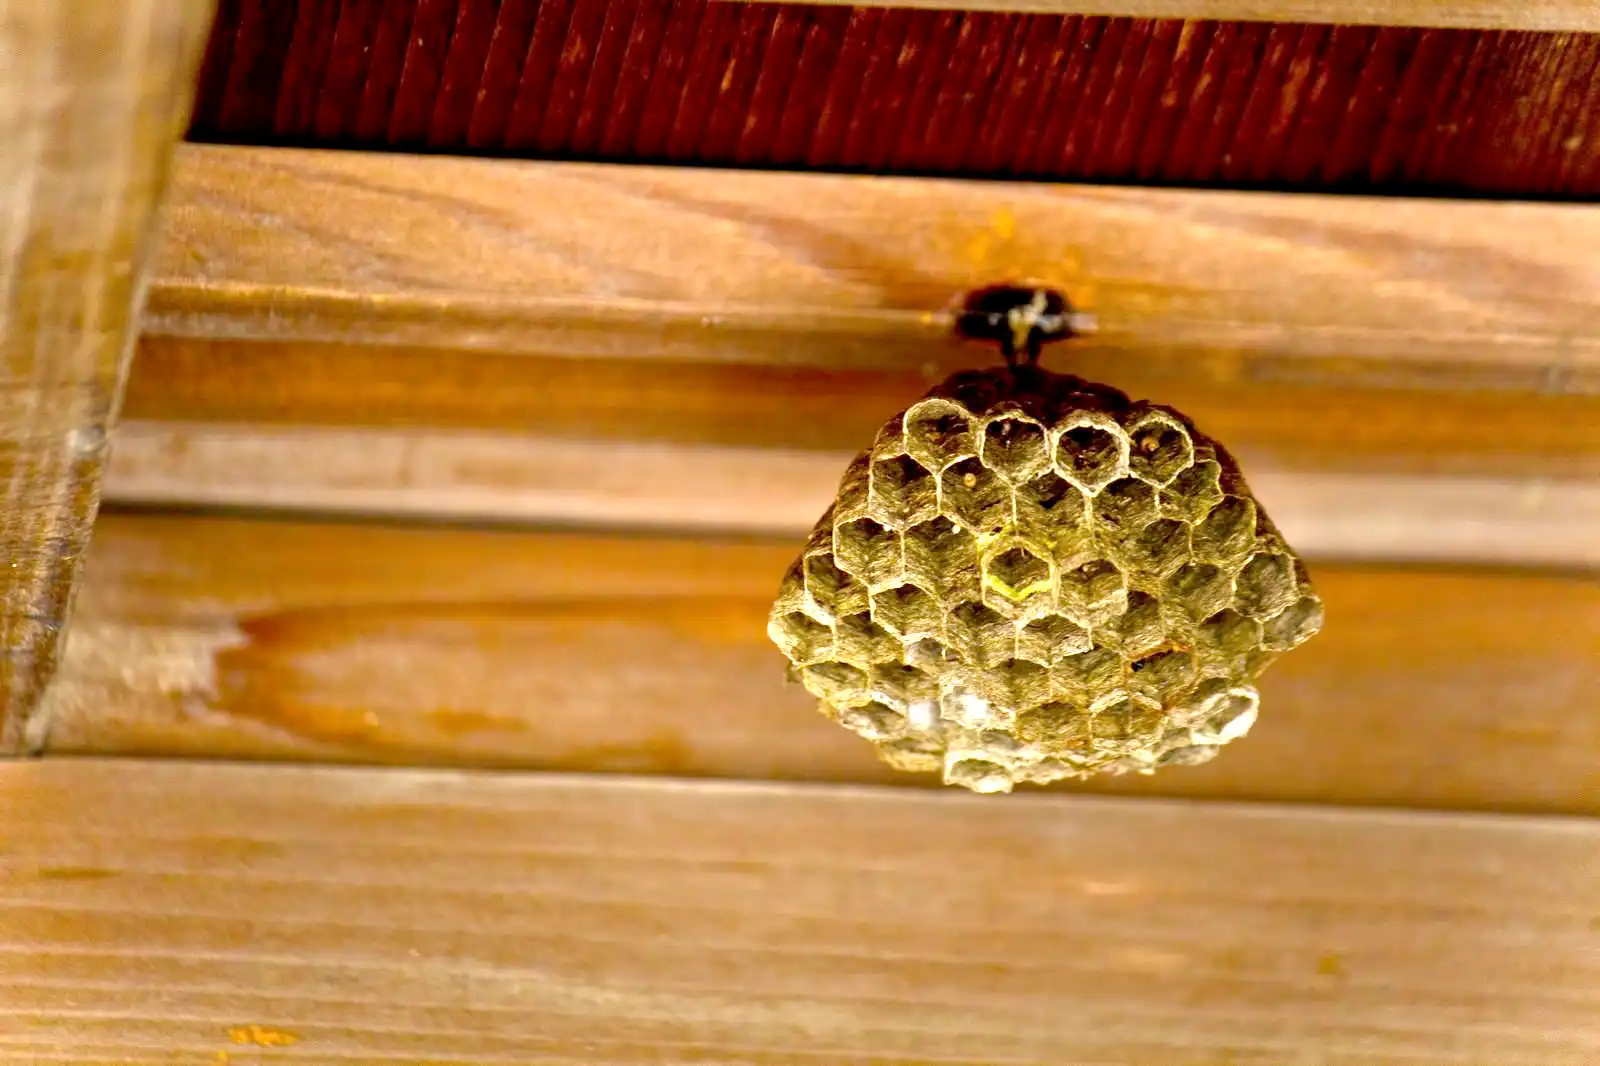 ハチの巣の場所がわからない時、見つけるための基本的な手順